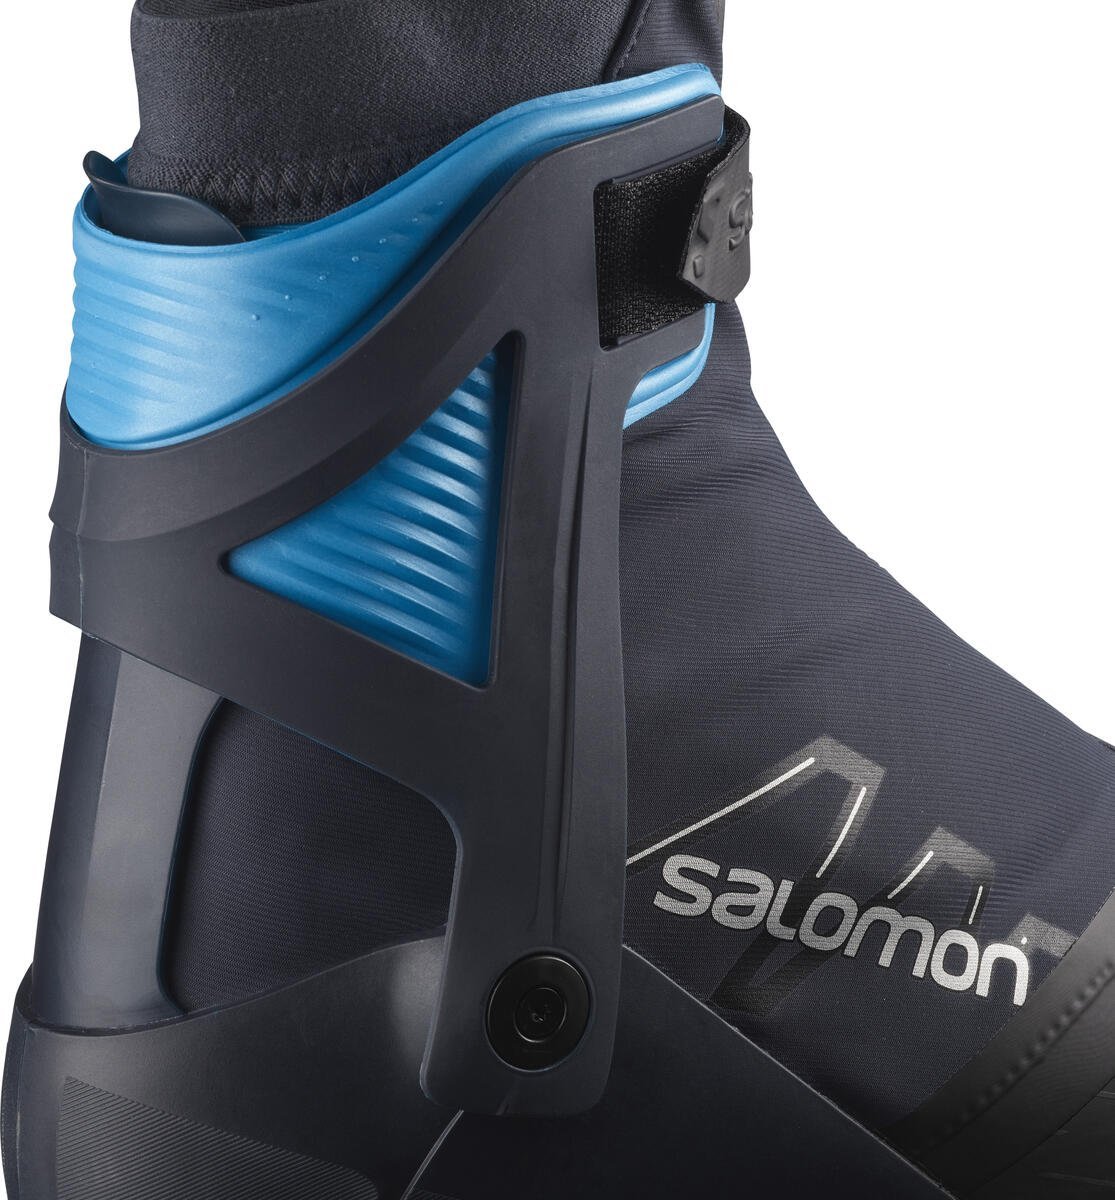 Obuv Salomon RS10 ProLink M - čierne/modré